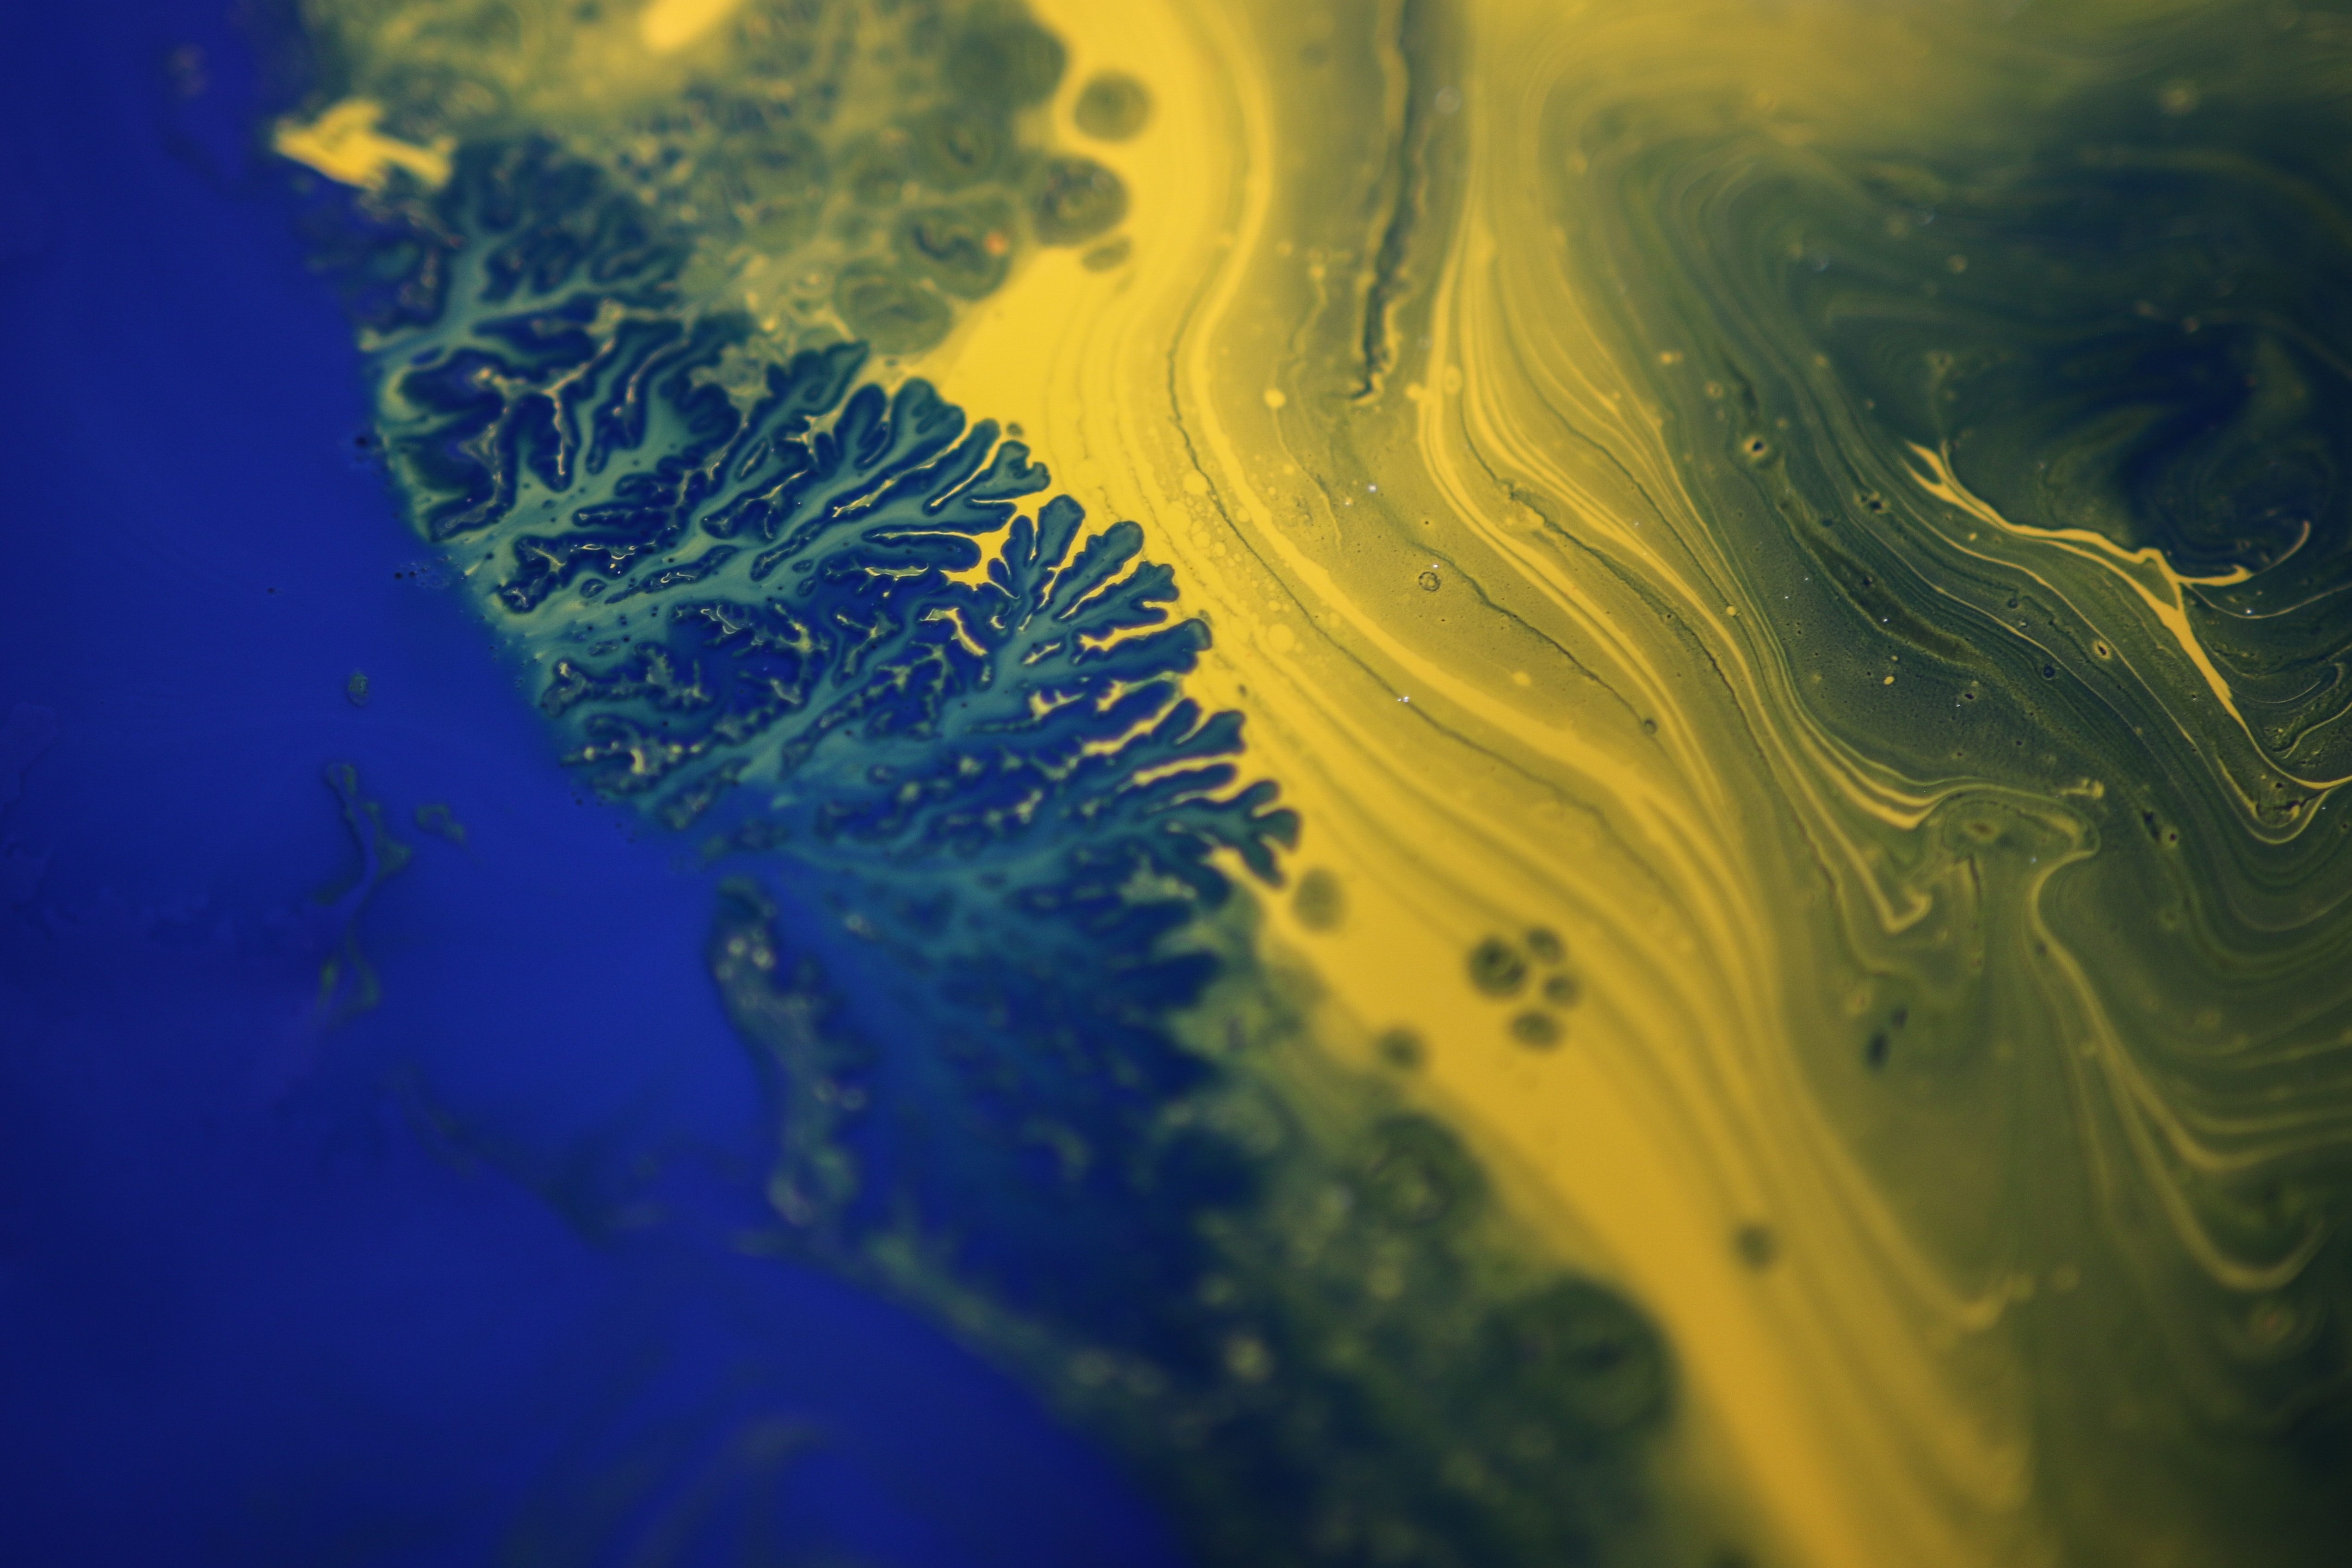 Blue And Yellow Fluid Art - HD Wallpaper 